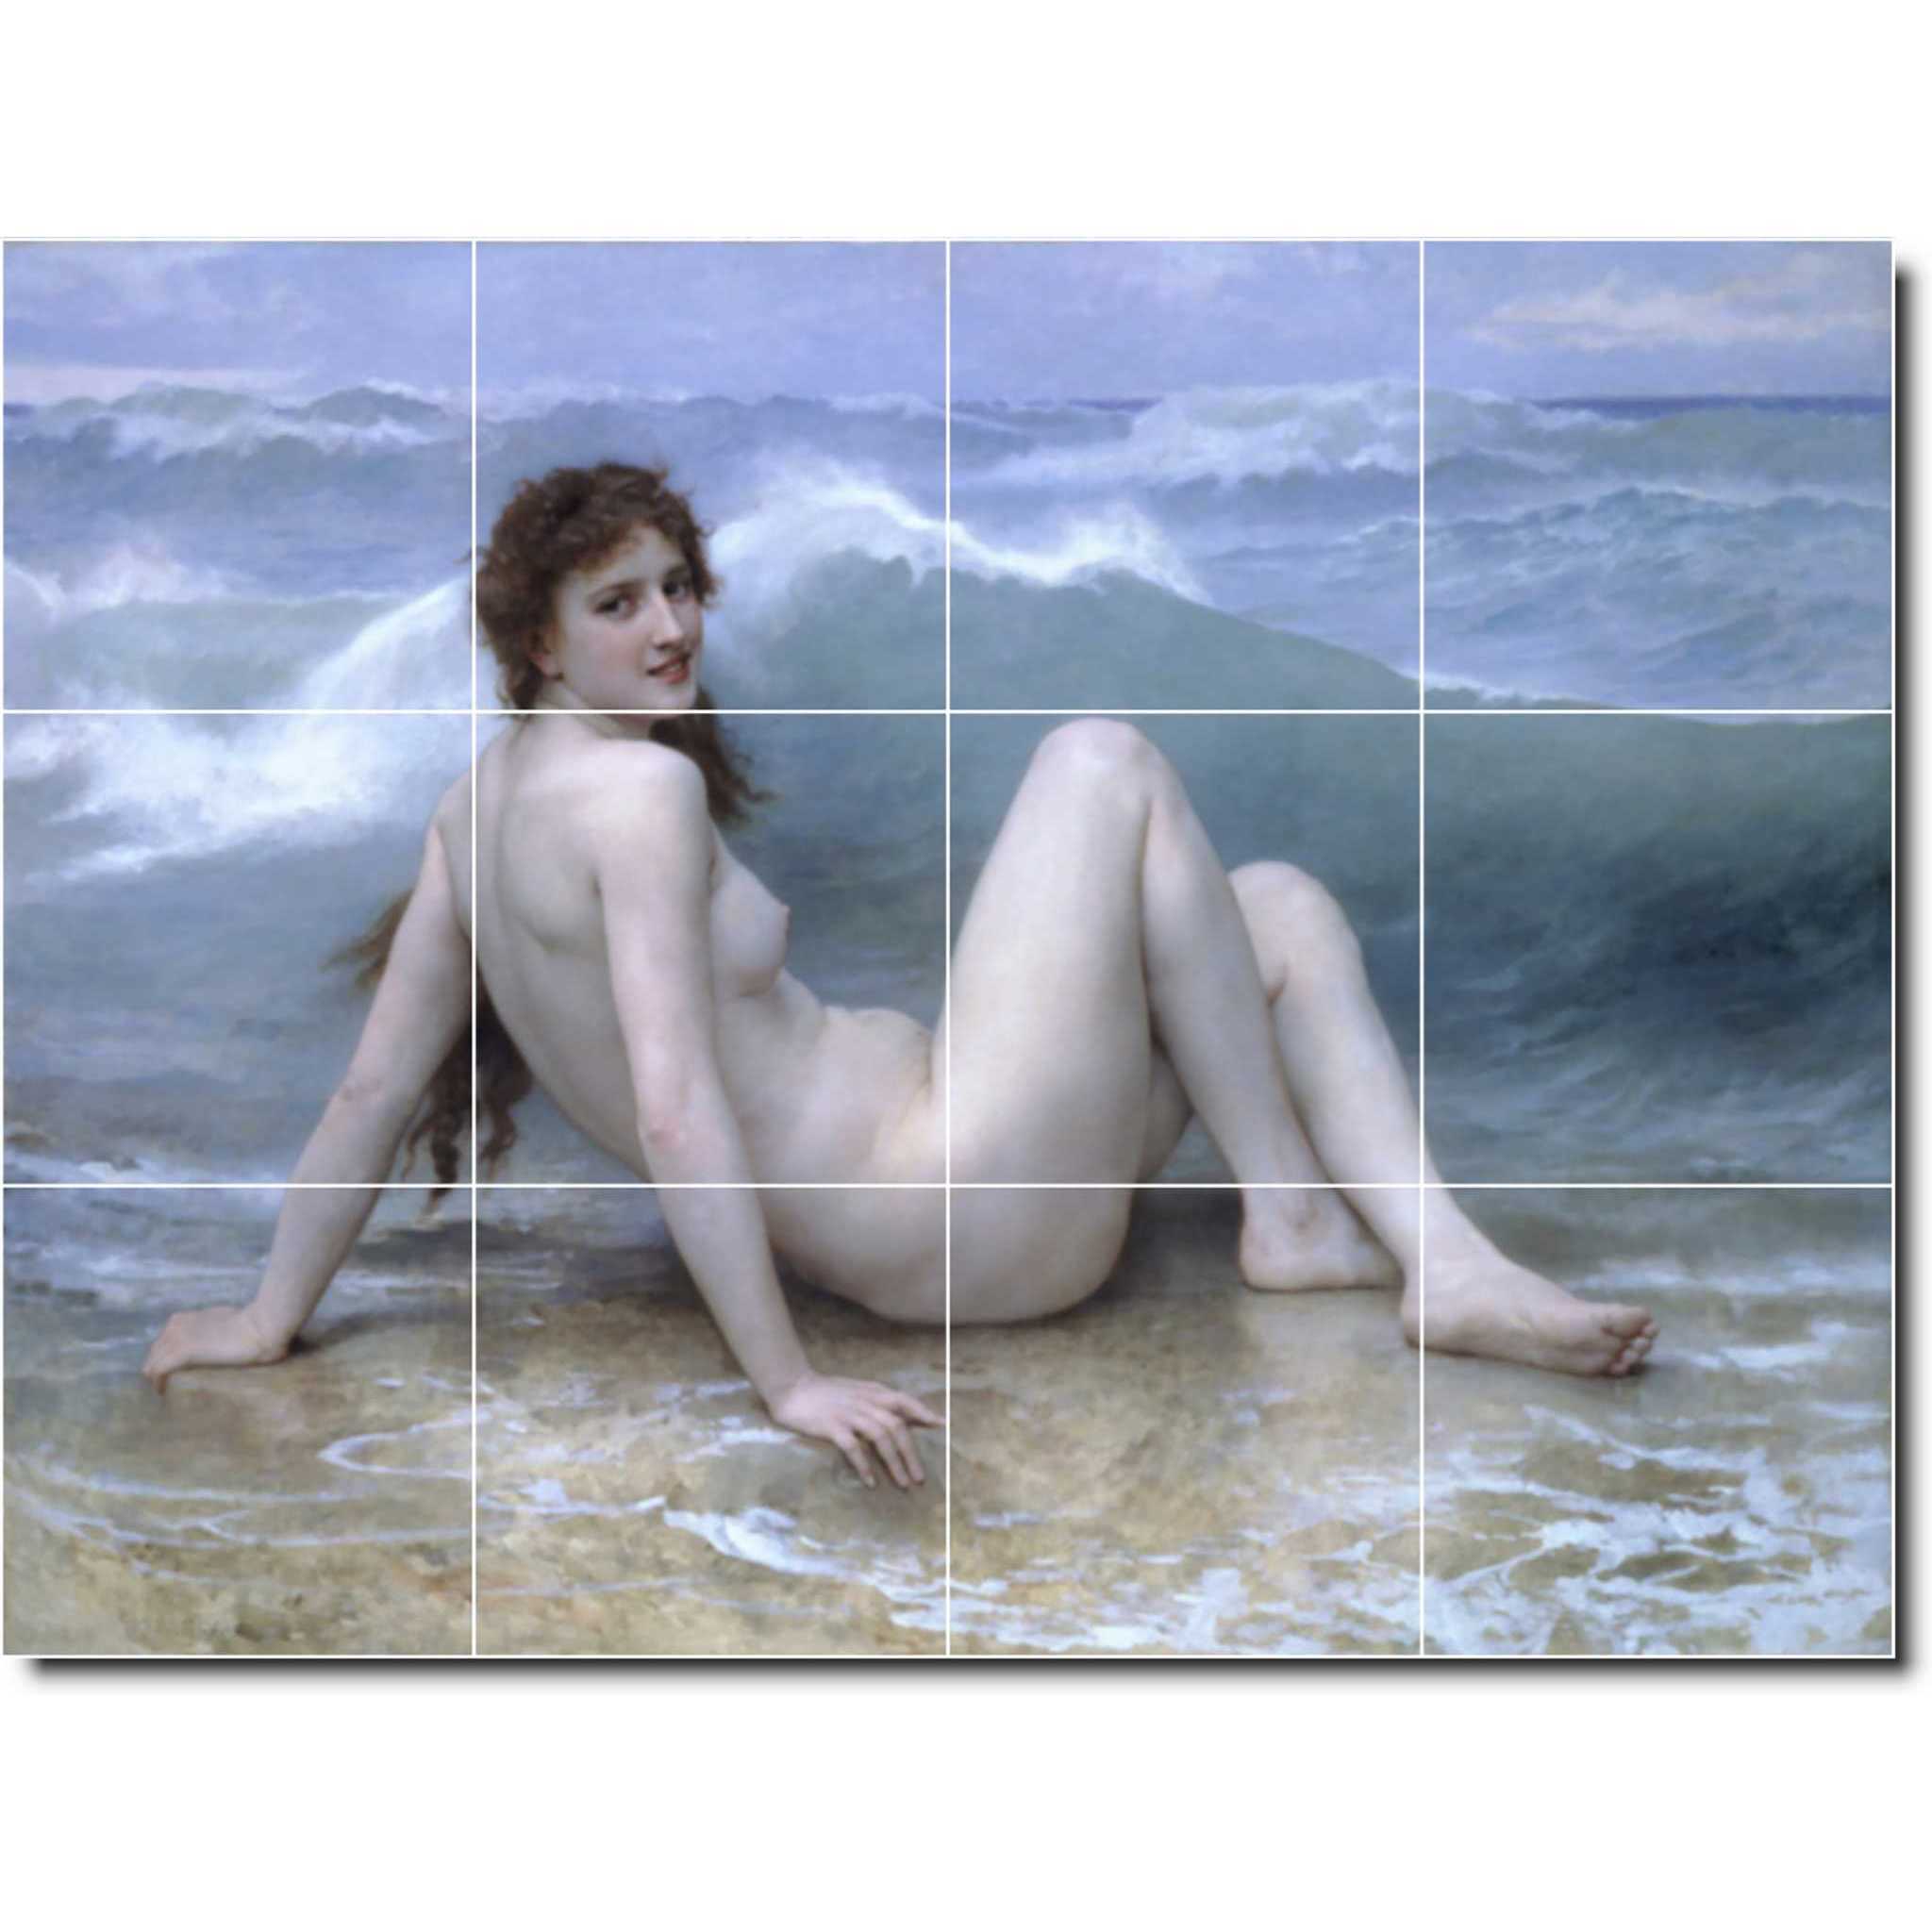 william bouguereau nude painting ceramic tile mural p00838